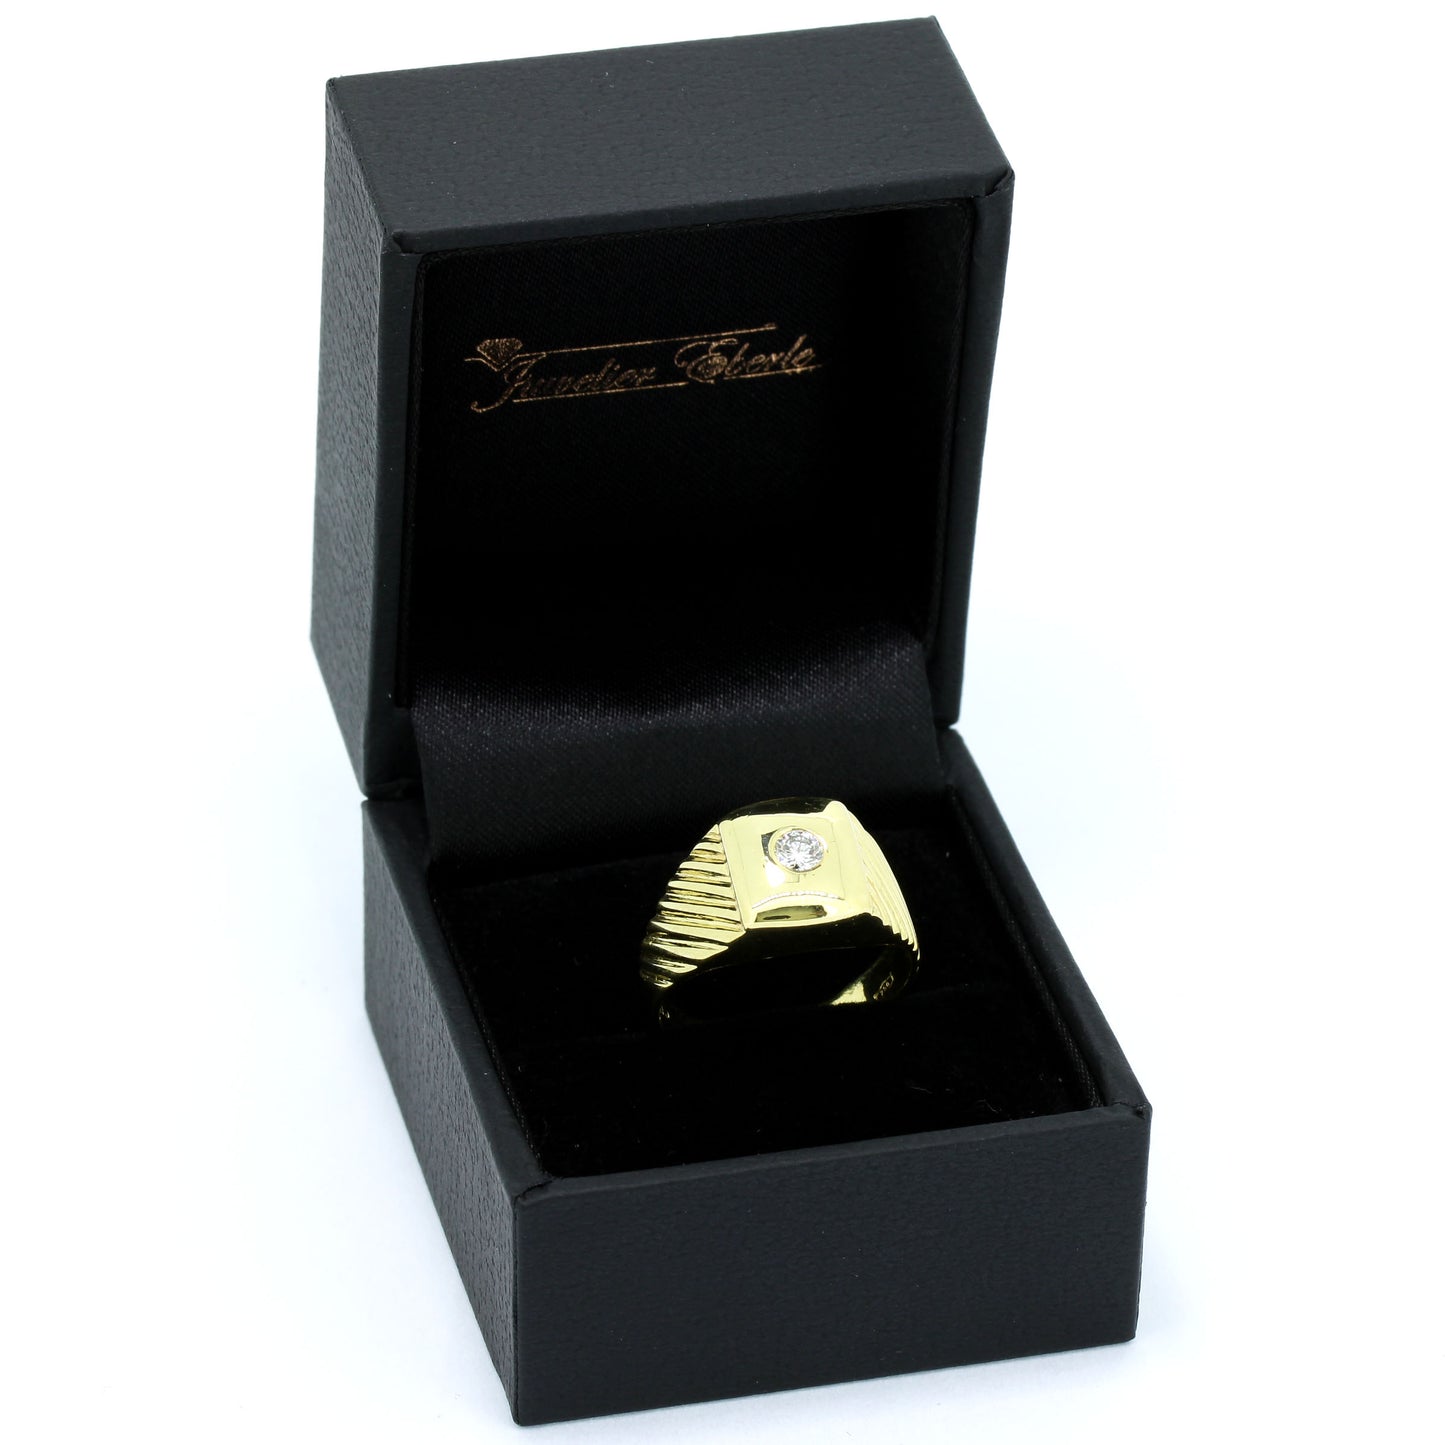 Ring 750 Gold 18 Kt Gelbgold - Brillant 0,16 ct G - VS - Wert 1240,-